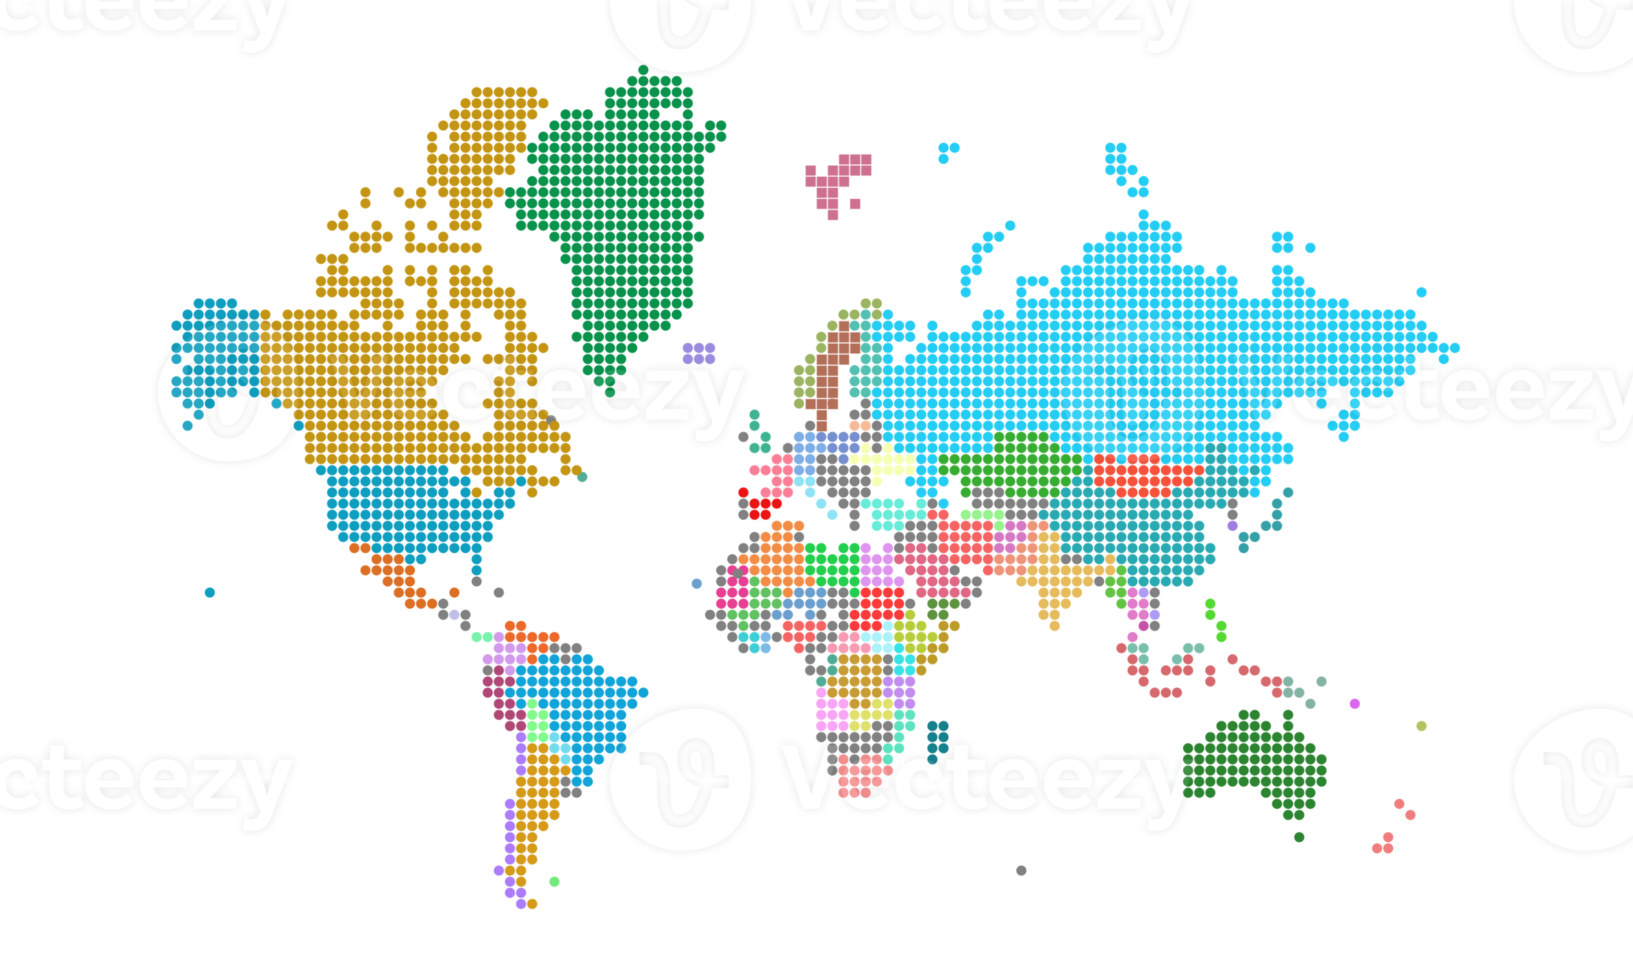 Punkte auf der Weltkarte. Weltkartenvorlage mit Kontinenten, Nord- und Südamerika, Europa und Asien, Afrika und Australien png